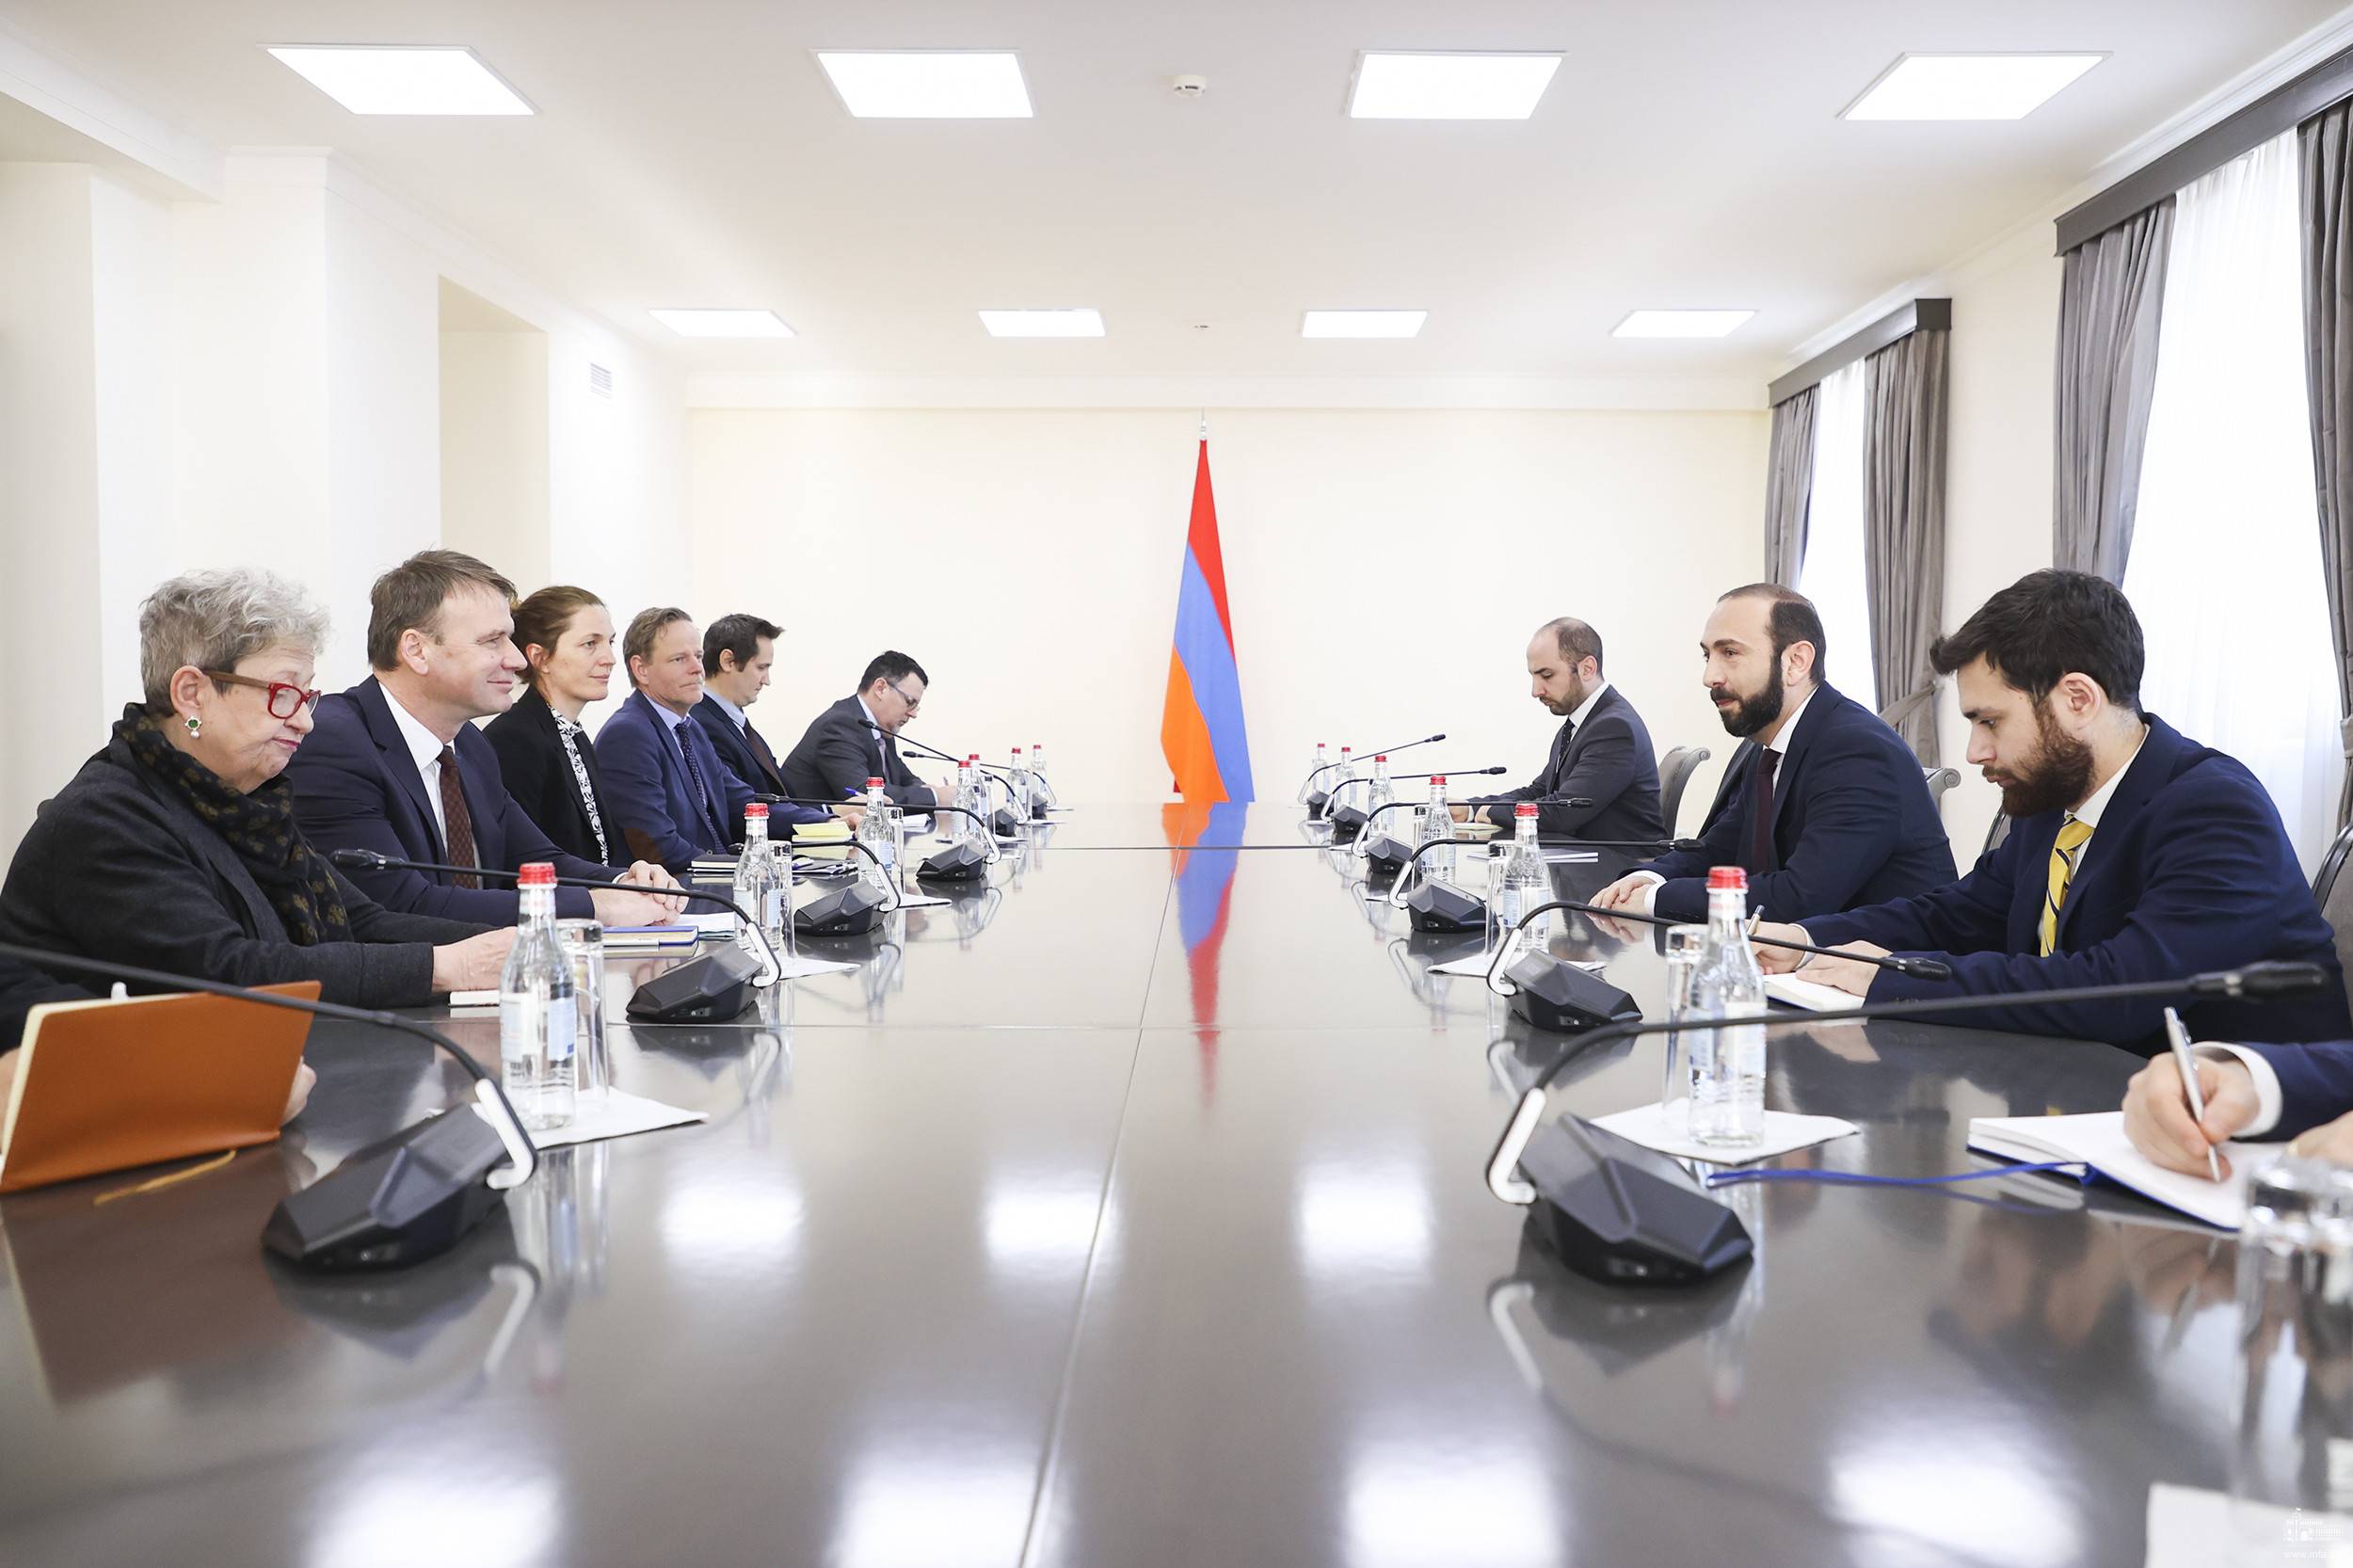 ԵՄ տեխնիկական խումբը Հայաստանում է՝ նոր առաքելության հնարավորությունը դիտարկելու համար